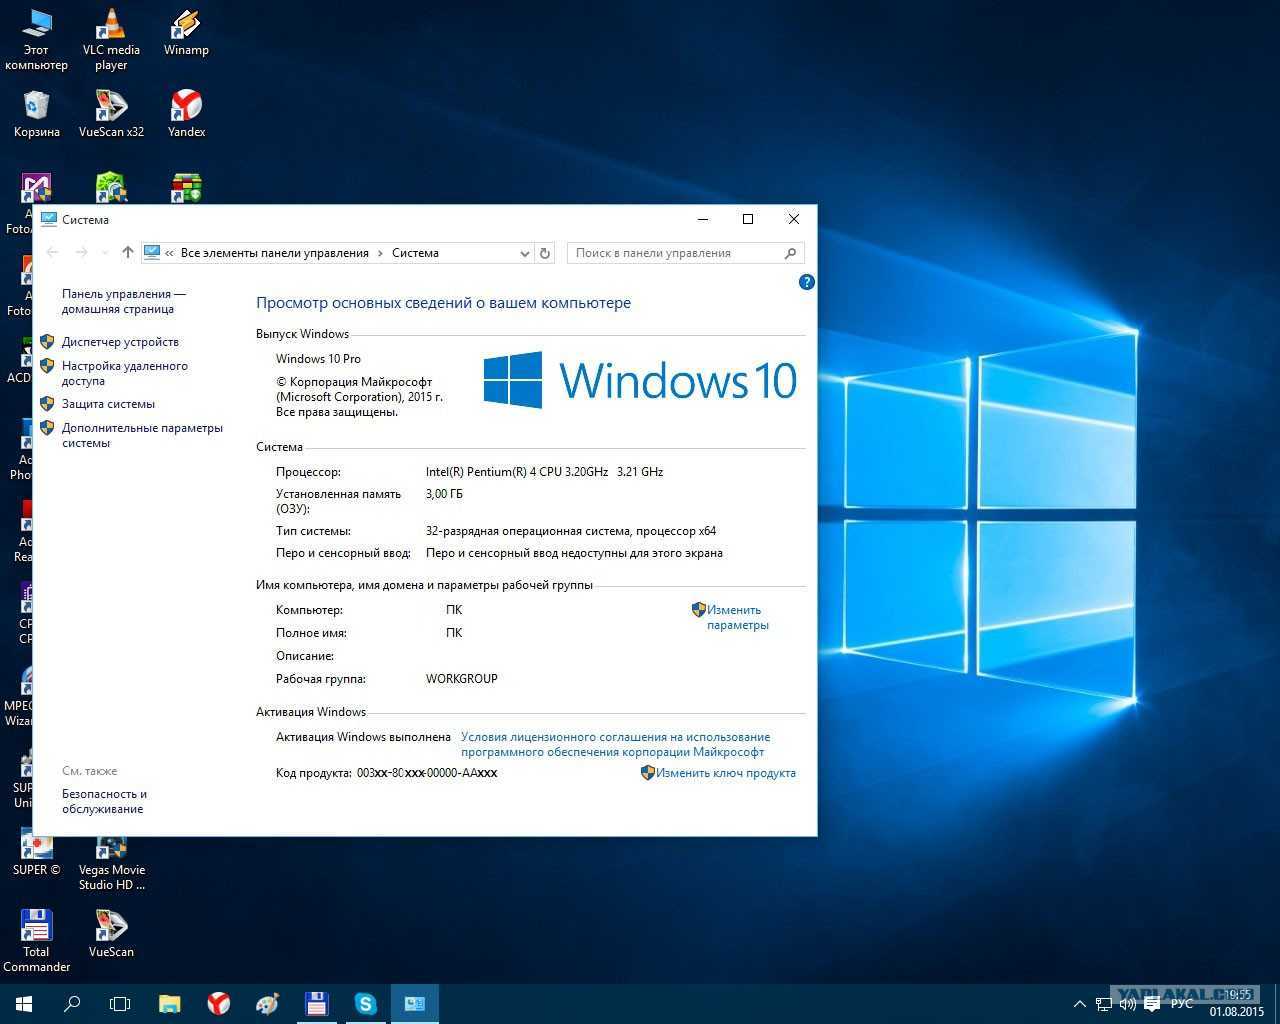 Ноутбук с установленной windows 11. Компьютер Windows. Характеристики компьютера для Windows. Windows 10 характеристики. Скрин с характеристиками ПК.